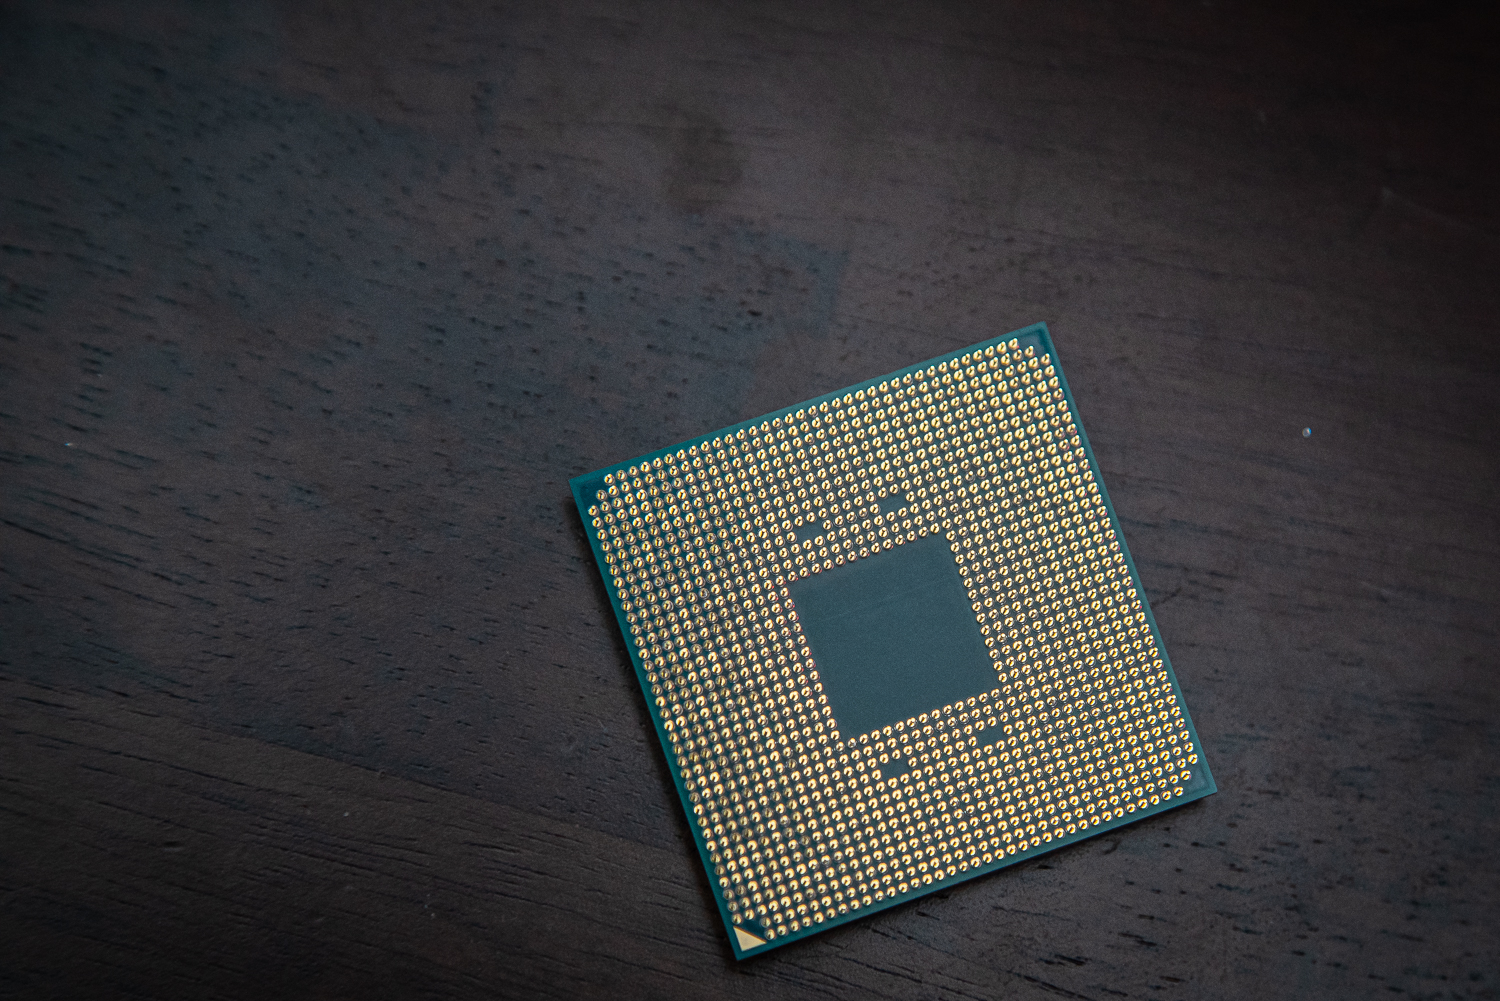 AMD Ryzen™ 7 5800X, Elite Gaming Desktop Processors